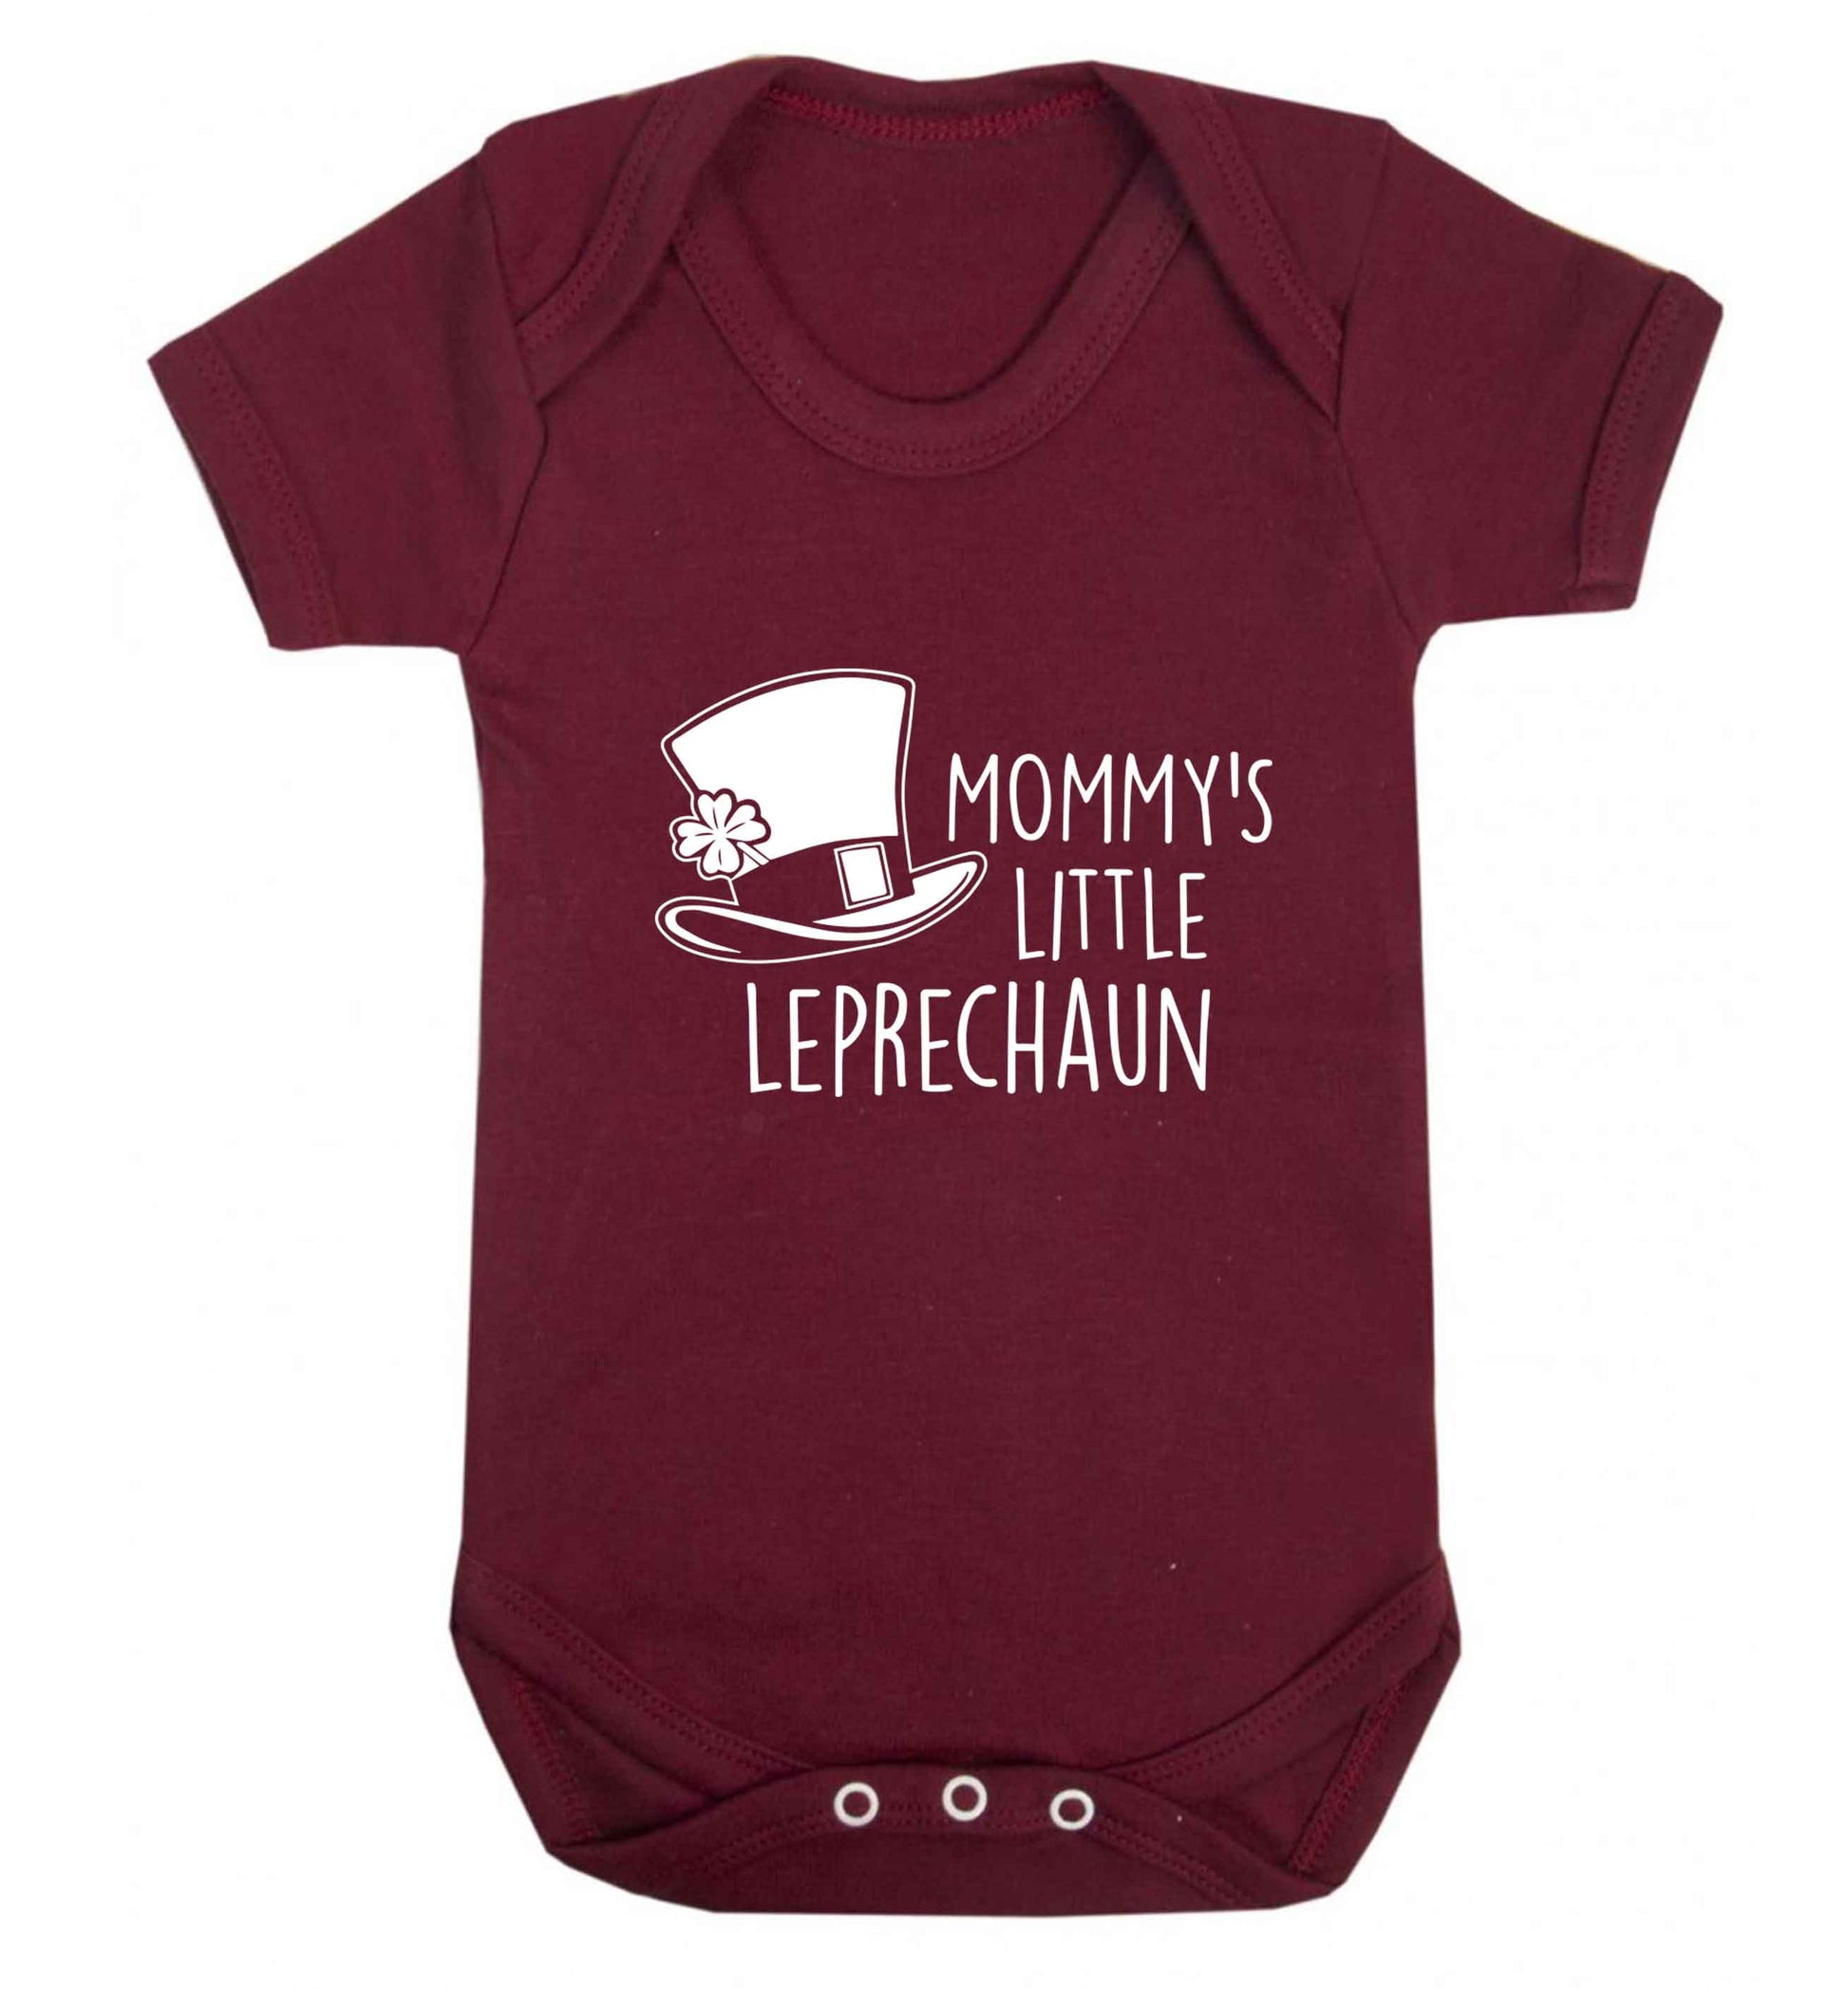 Mommy's little leprechaun baby vest maroon 18-24 months